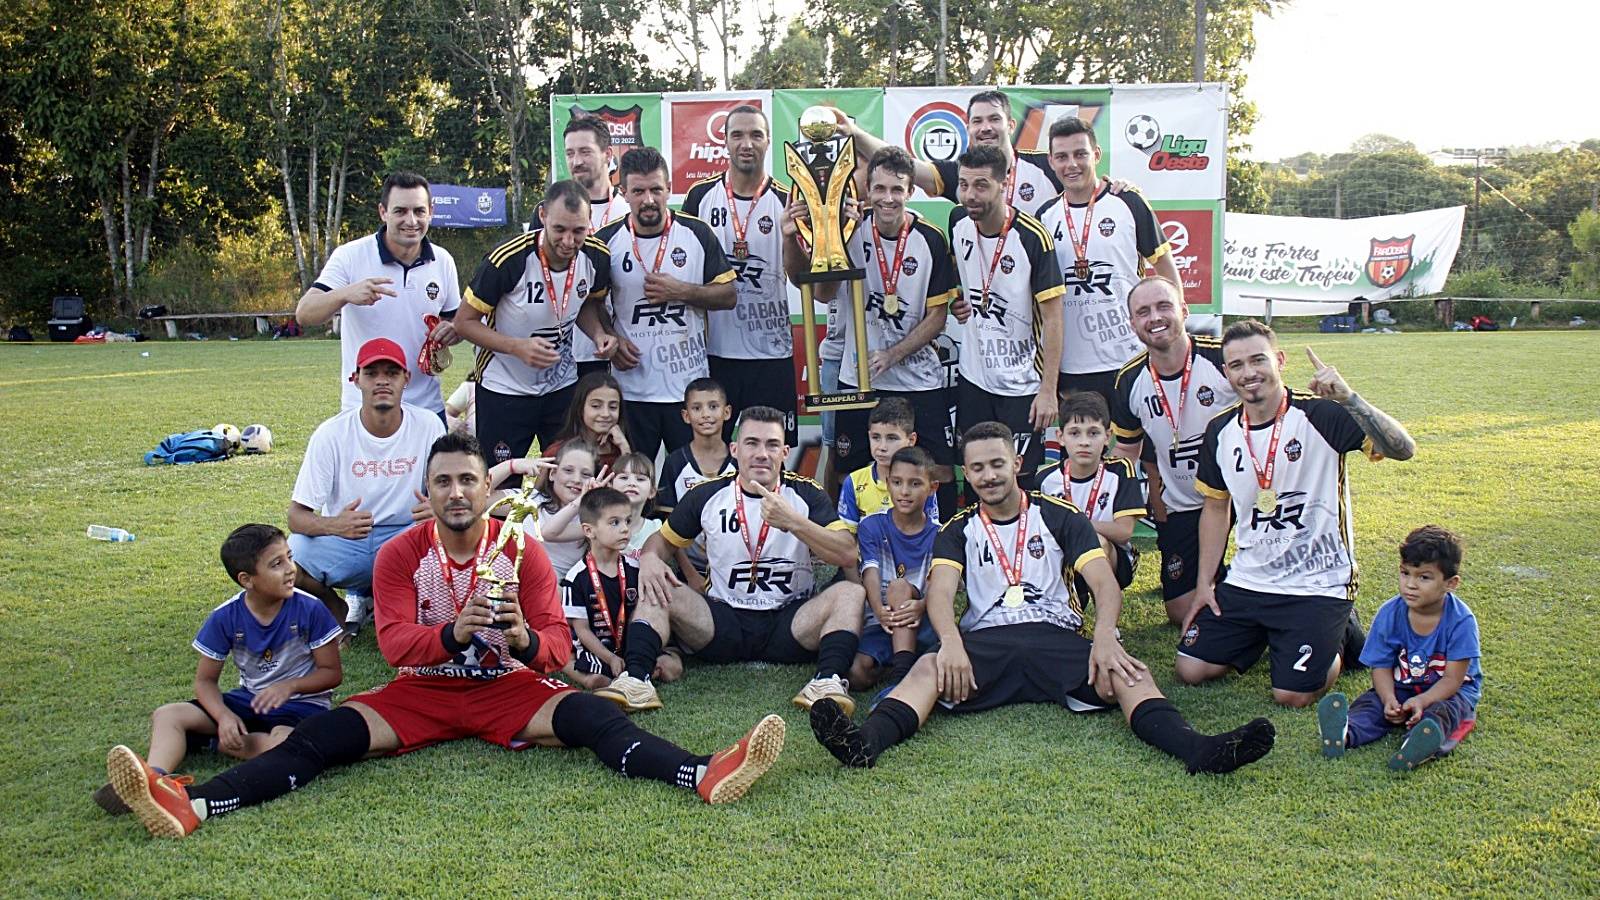 Cabana da Onça conquista título da maior edição da Copa Chácara Fardoski de Futebol 7 em Cascavel